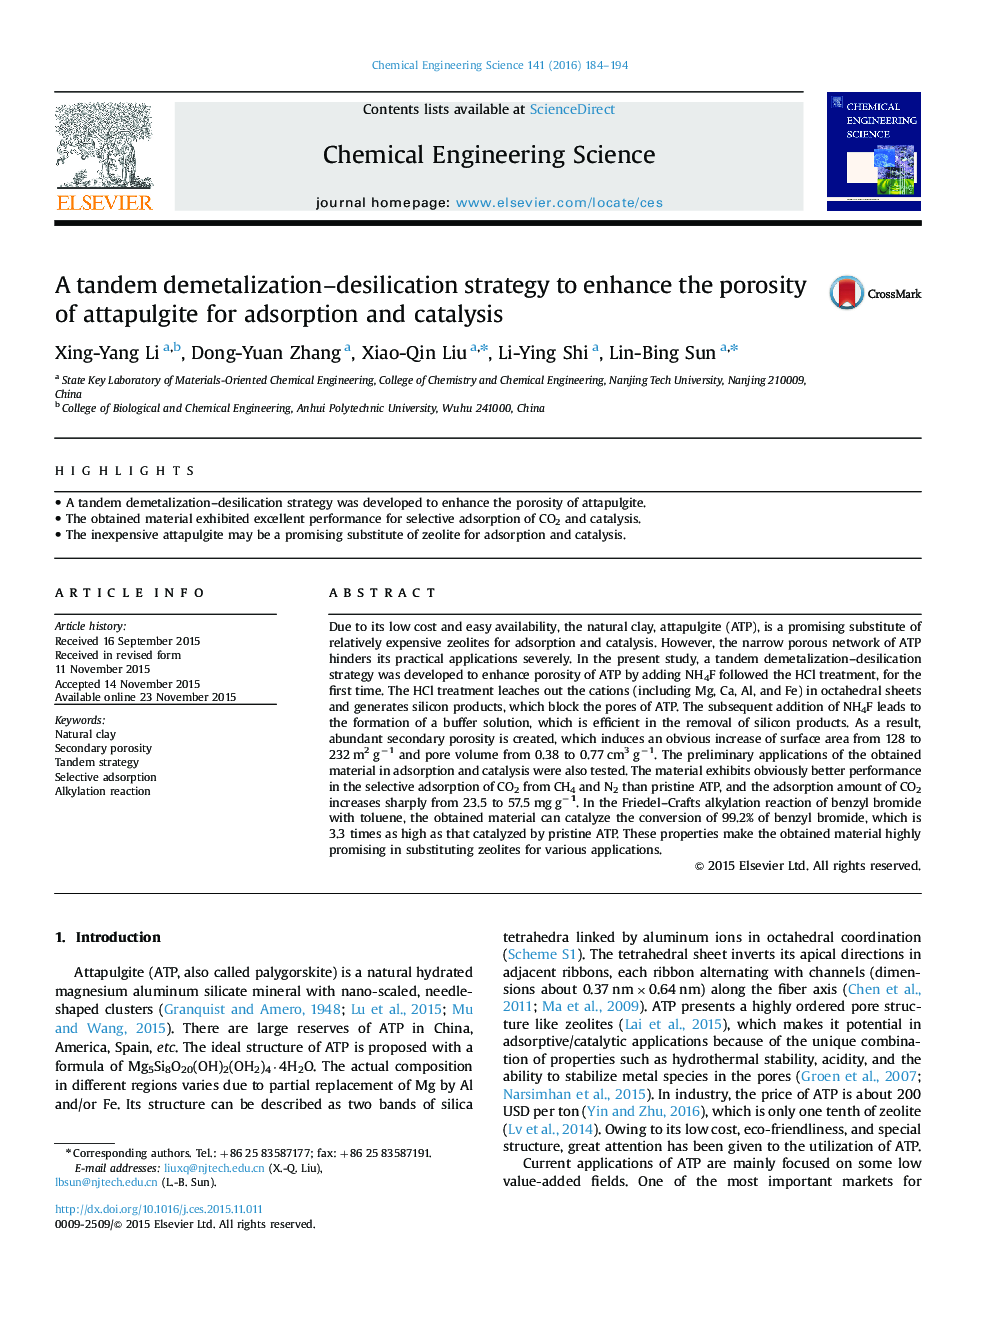 یک استراتژی توزیع مجدد استراتژیک برای افزایش تخلخل آتتپالژیت برای جذب و کاتالیزوری 